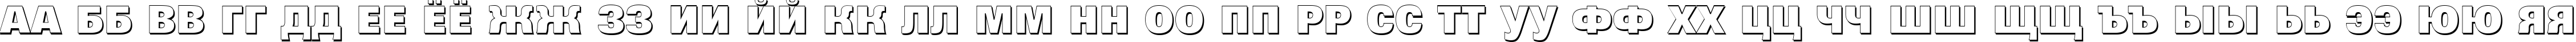 Пример написания русского алфавита шрифтом a_GroticTitulShHv